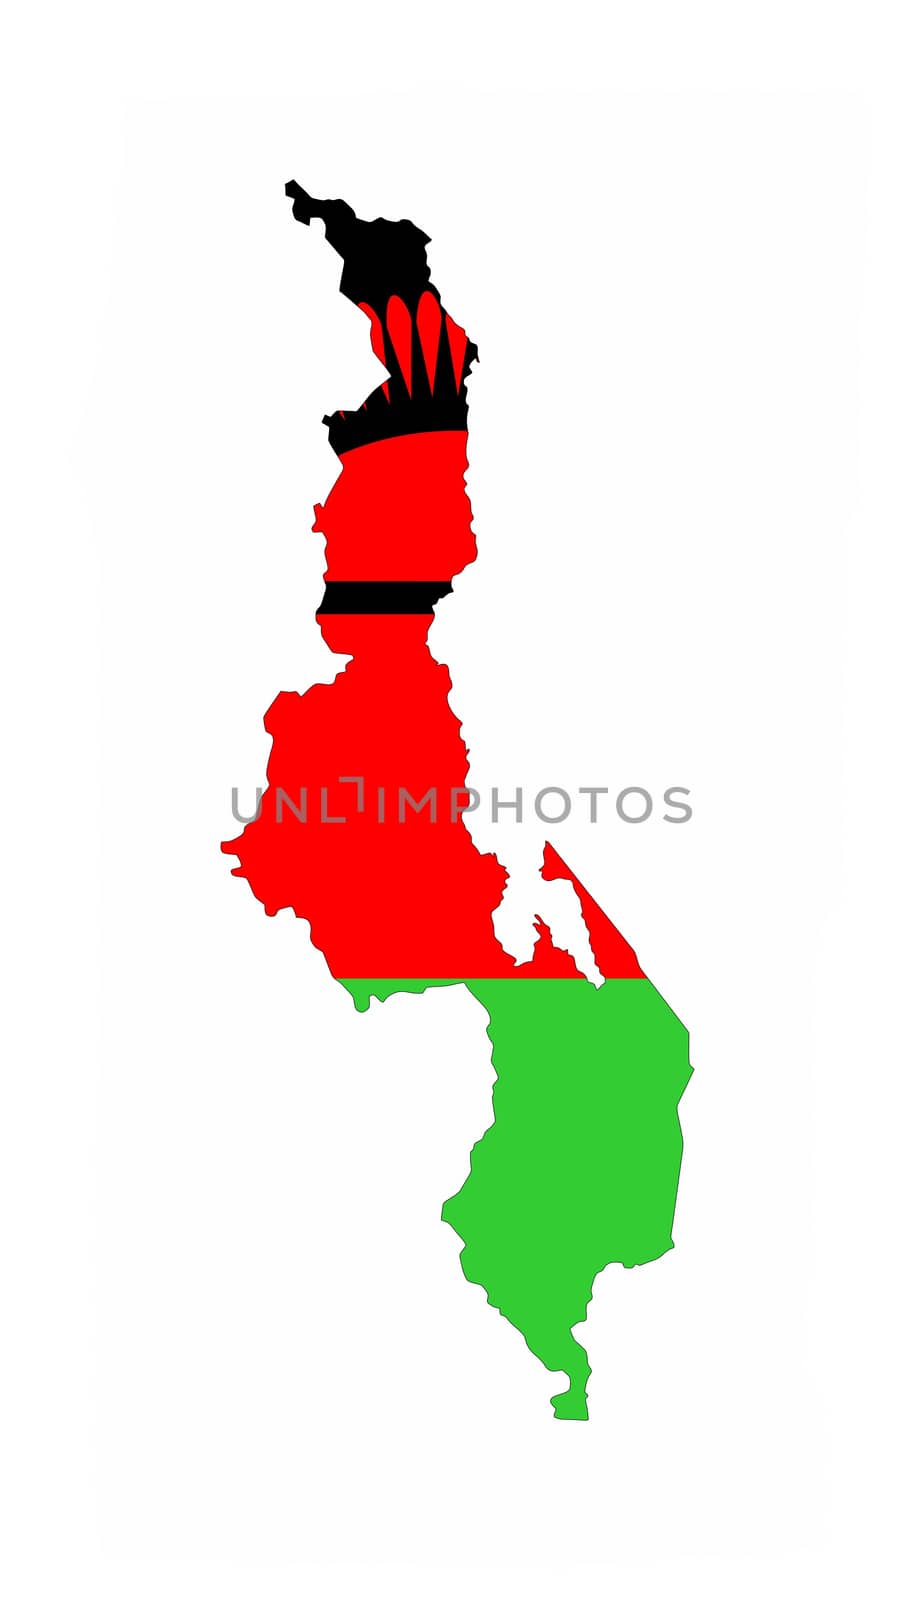 malawi country flag map shape national symbol